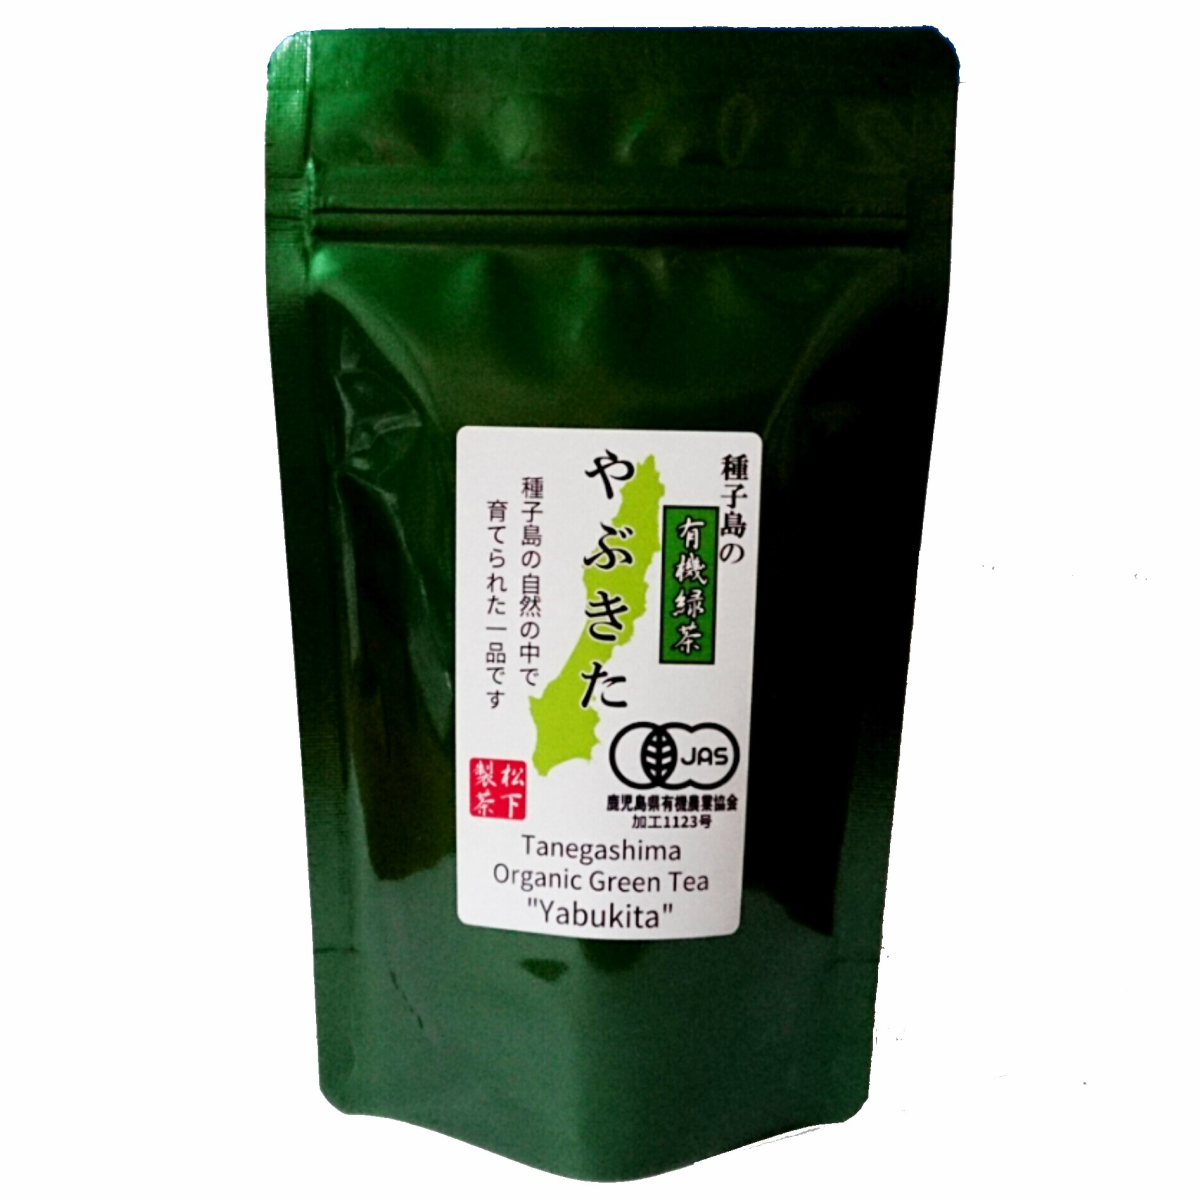 種子島の有機緑茶『やぶきた』 茶葉(リーフ) 100g 松下製茶